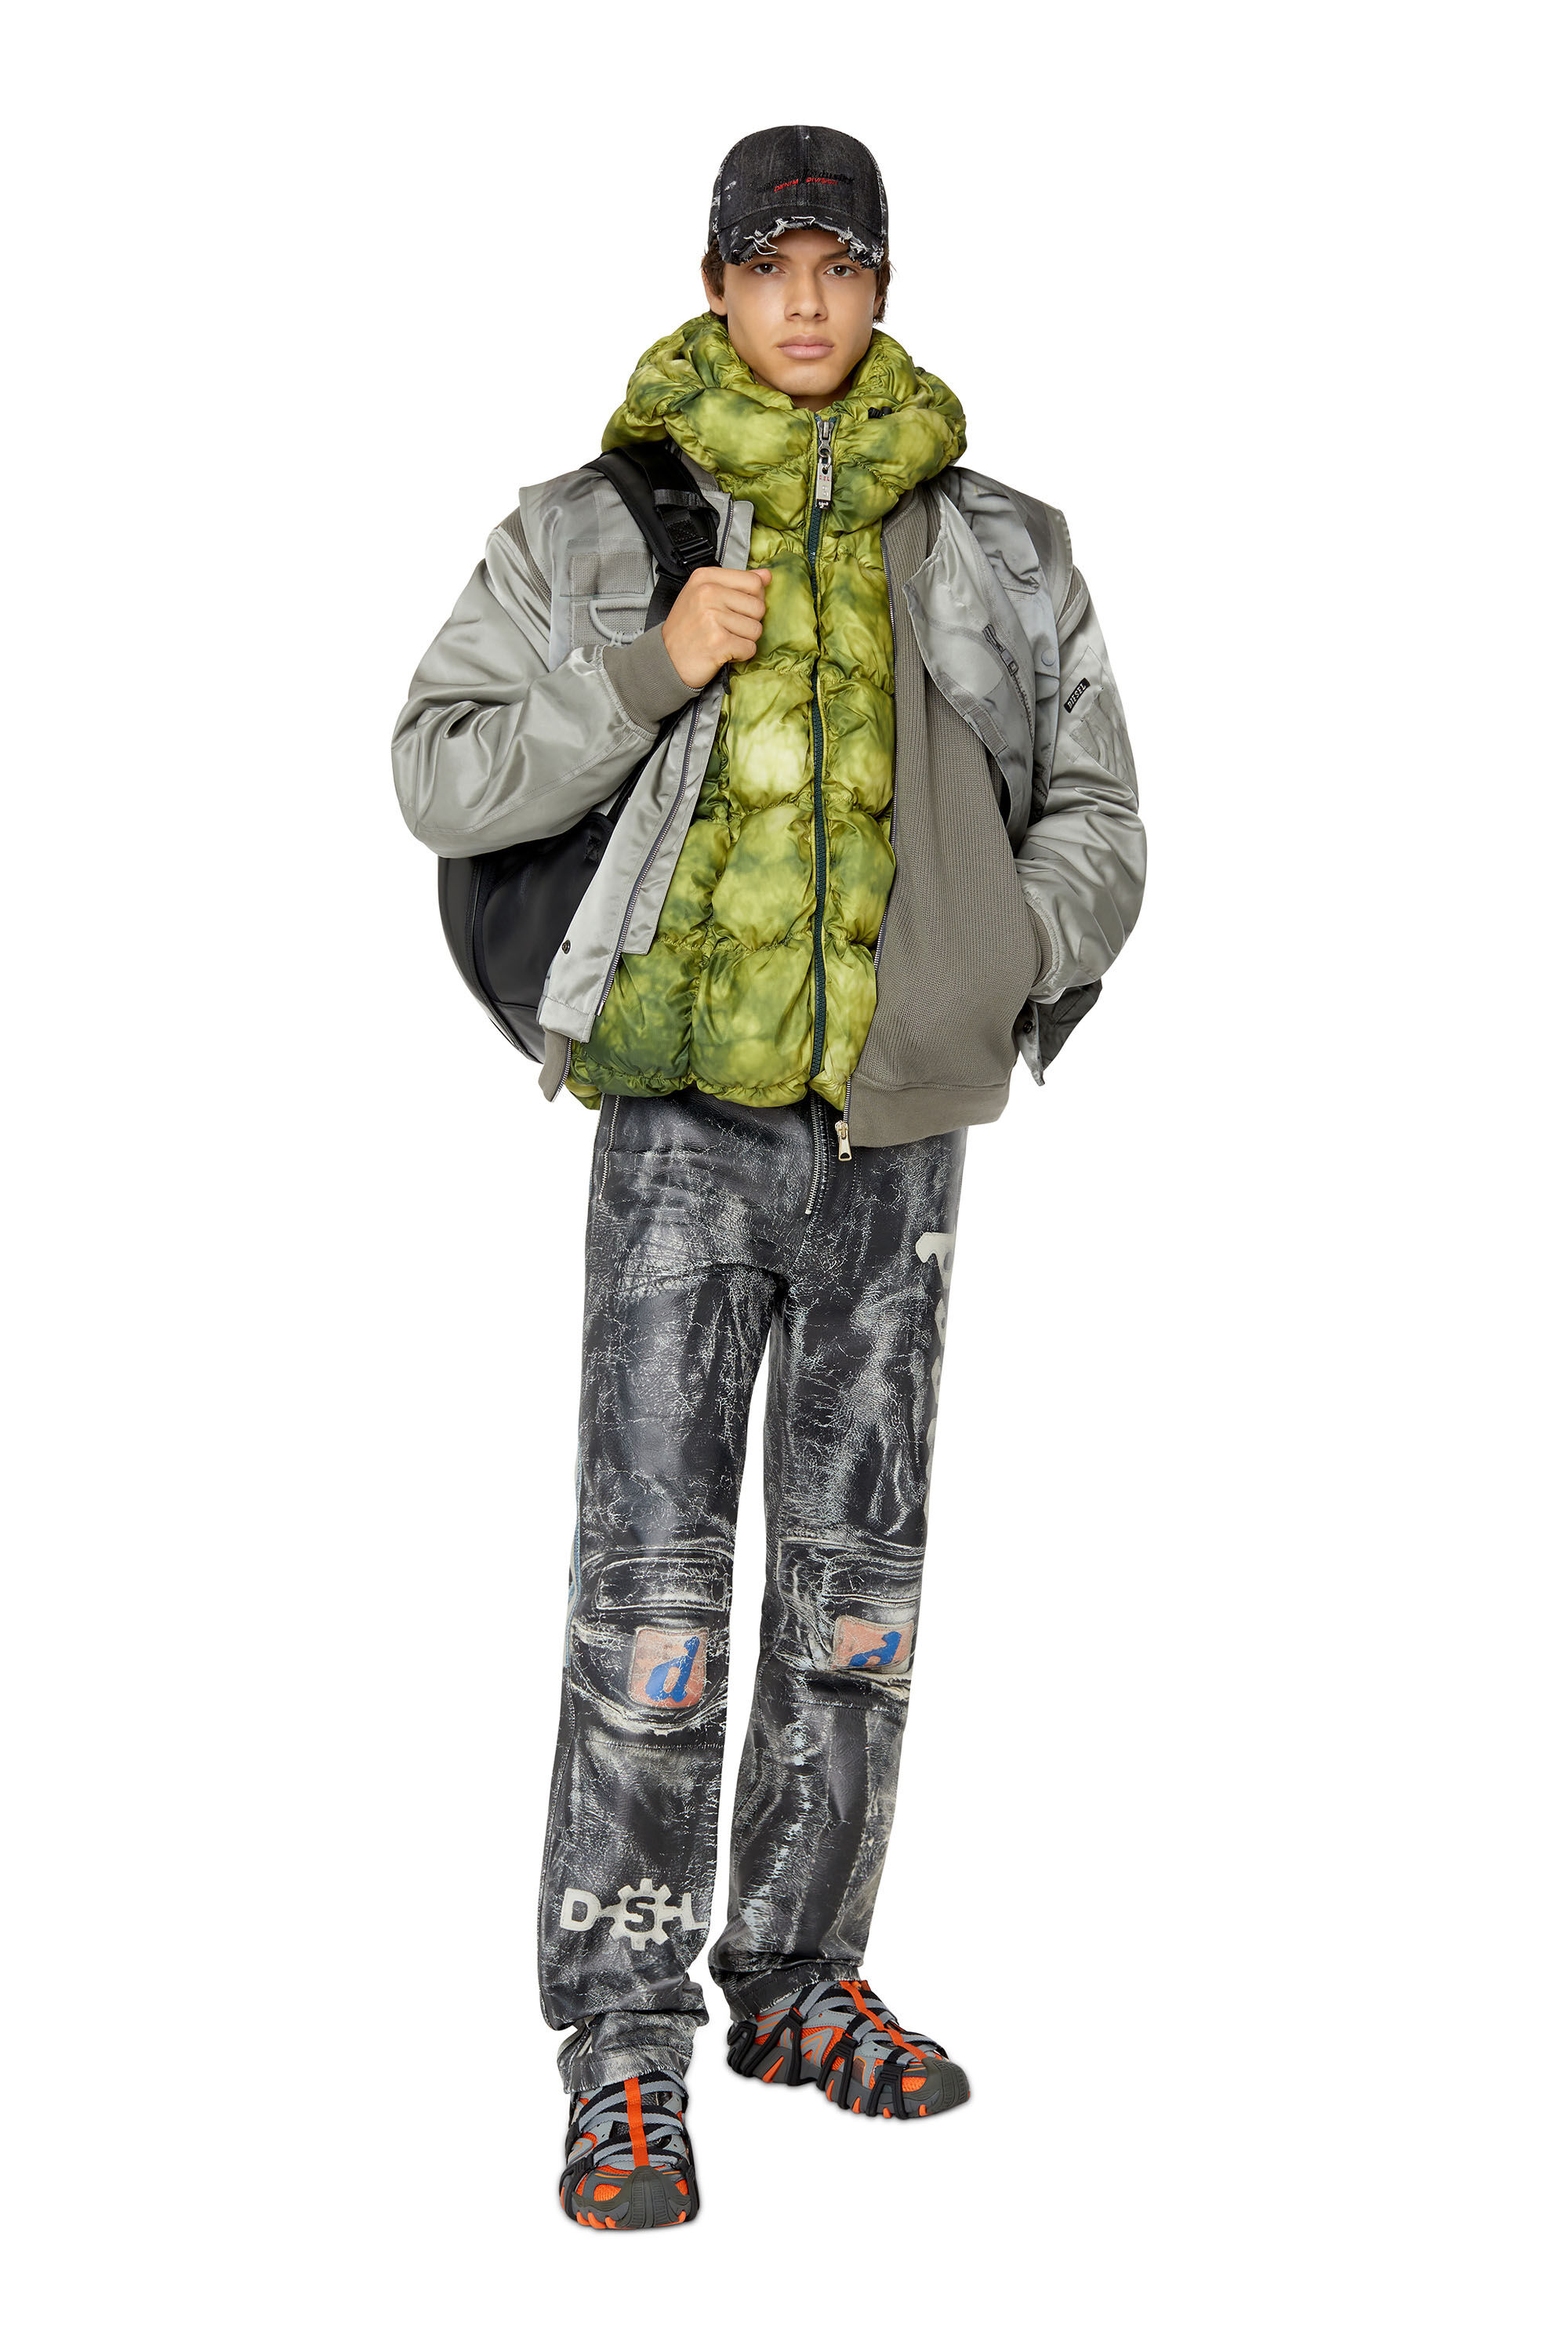 1DR-POD BACKPACK Man: Hard shell leather backpack | Diesel